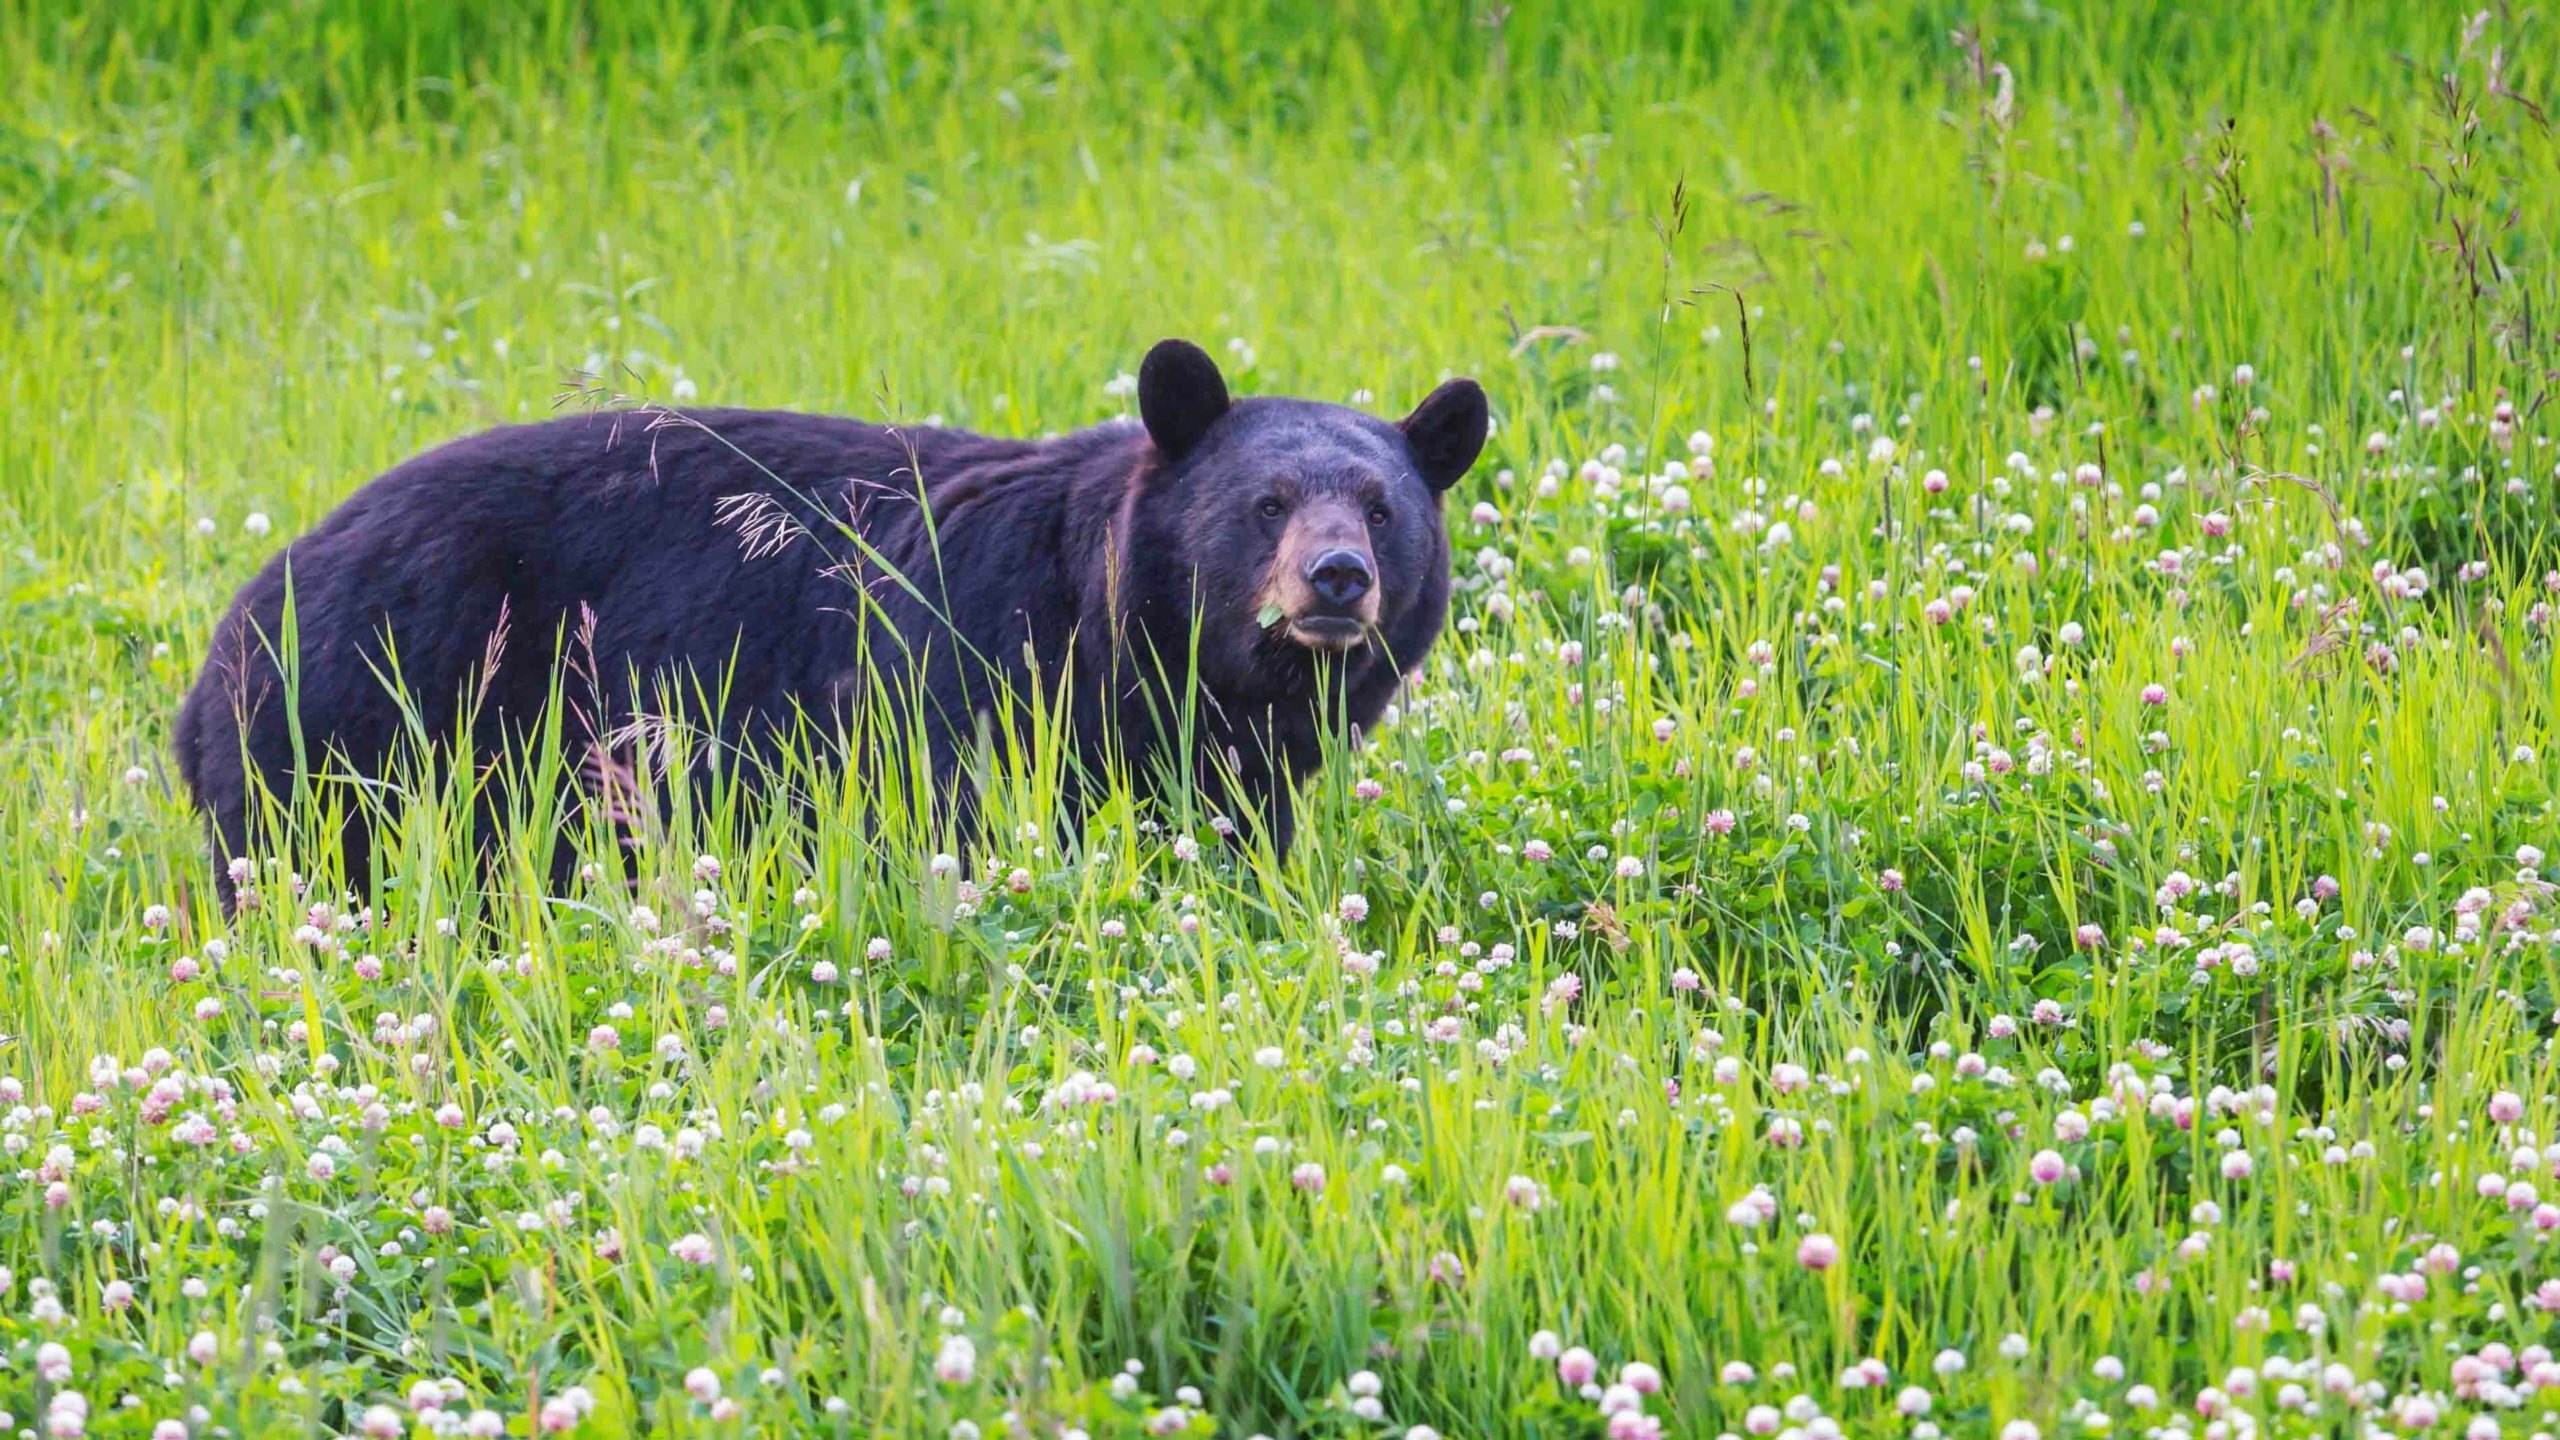 Black bear photo scaled